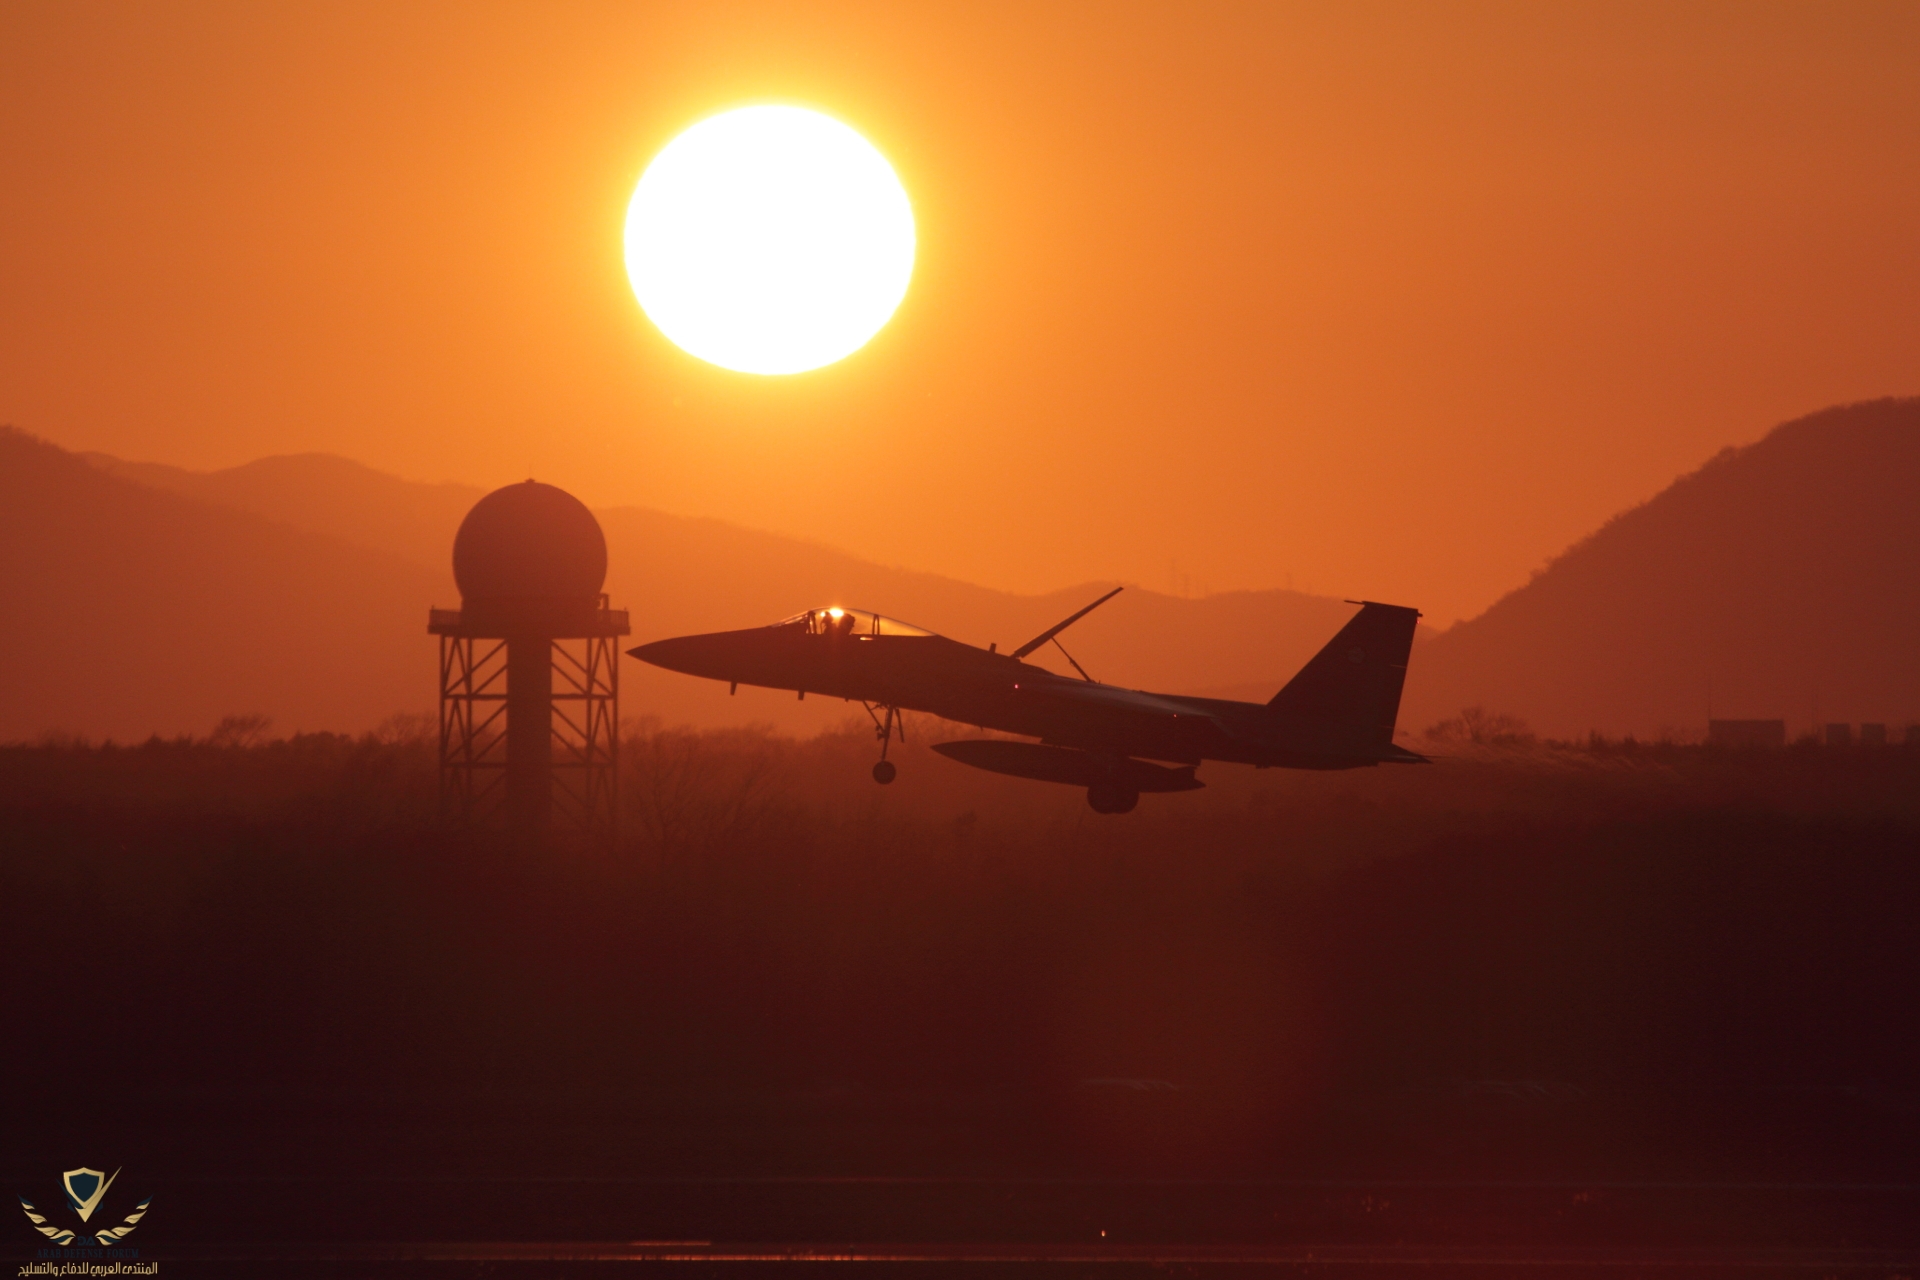 JASDF_F-15_at_Chitose_Air_Base.jpg